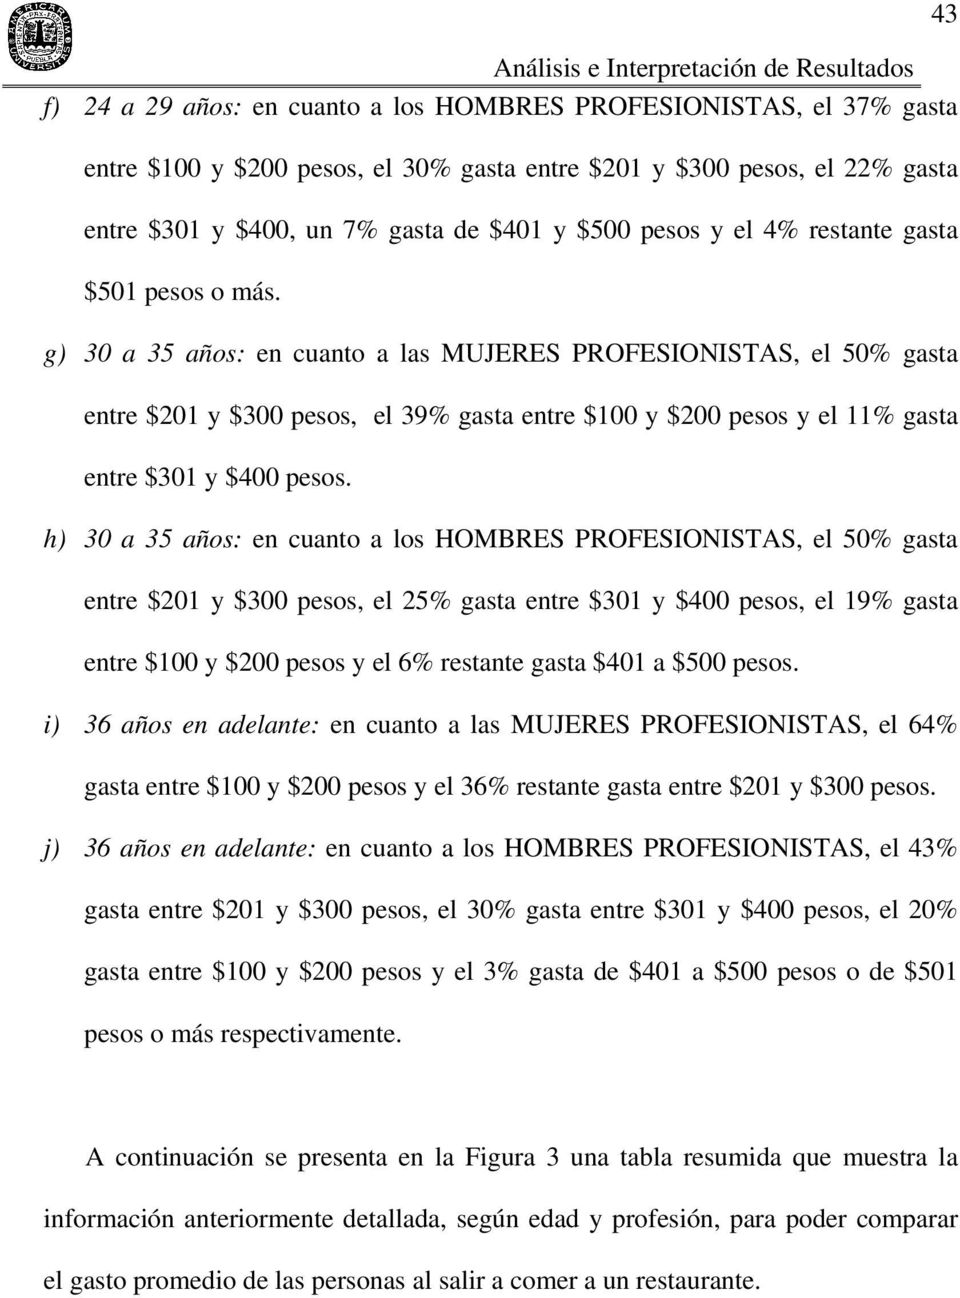 g) 30 a 35 años: en cuanto a las MUJERES PROFESIONISTAS, el 50% gasta entre $201 y $300 pesos, el 39% gasta entre $100 y $200 pesos y el 11% gasta entre $301 y $400 pesos.